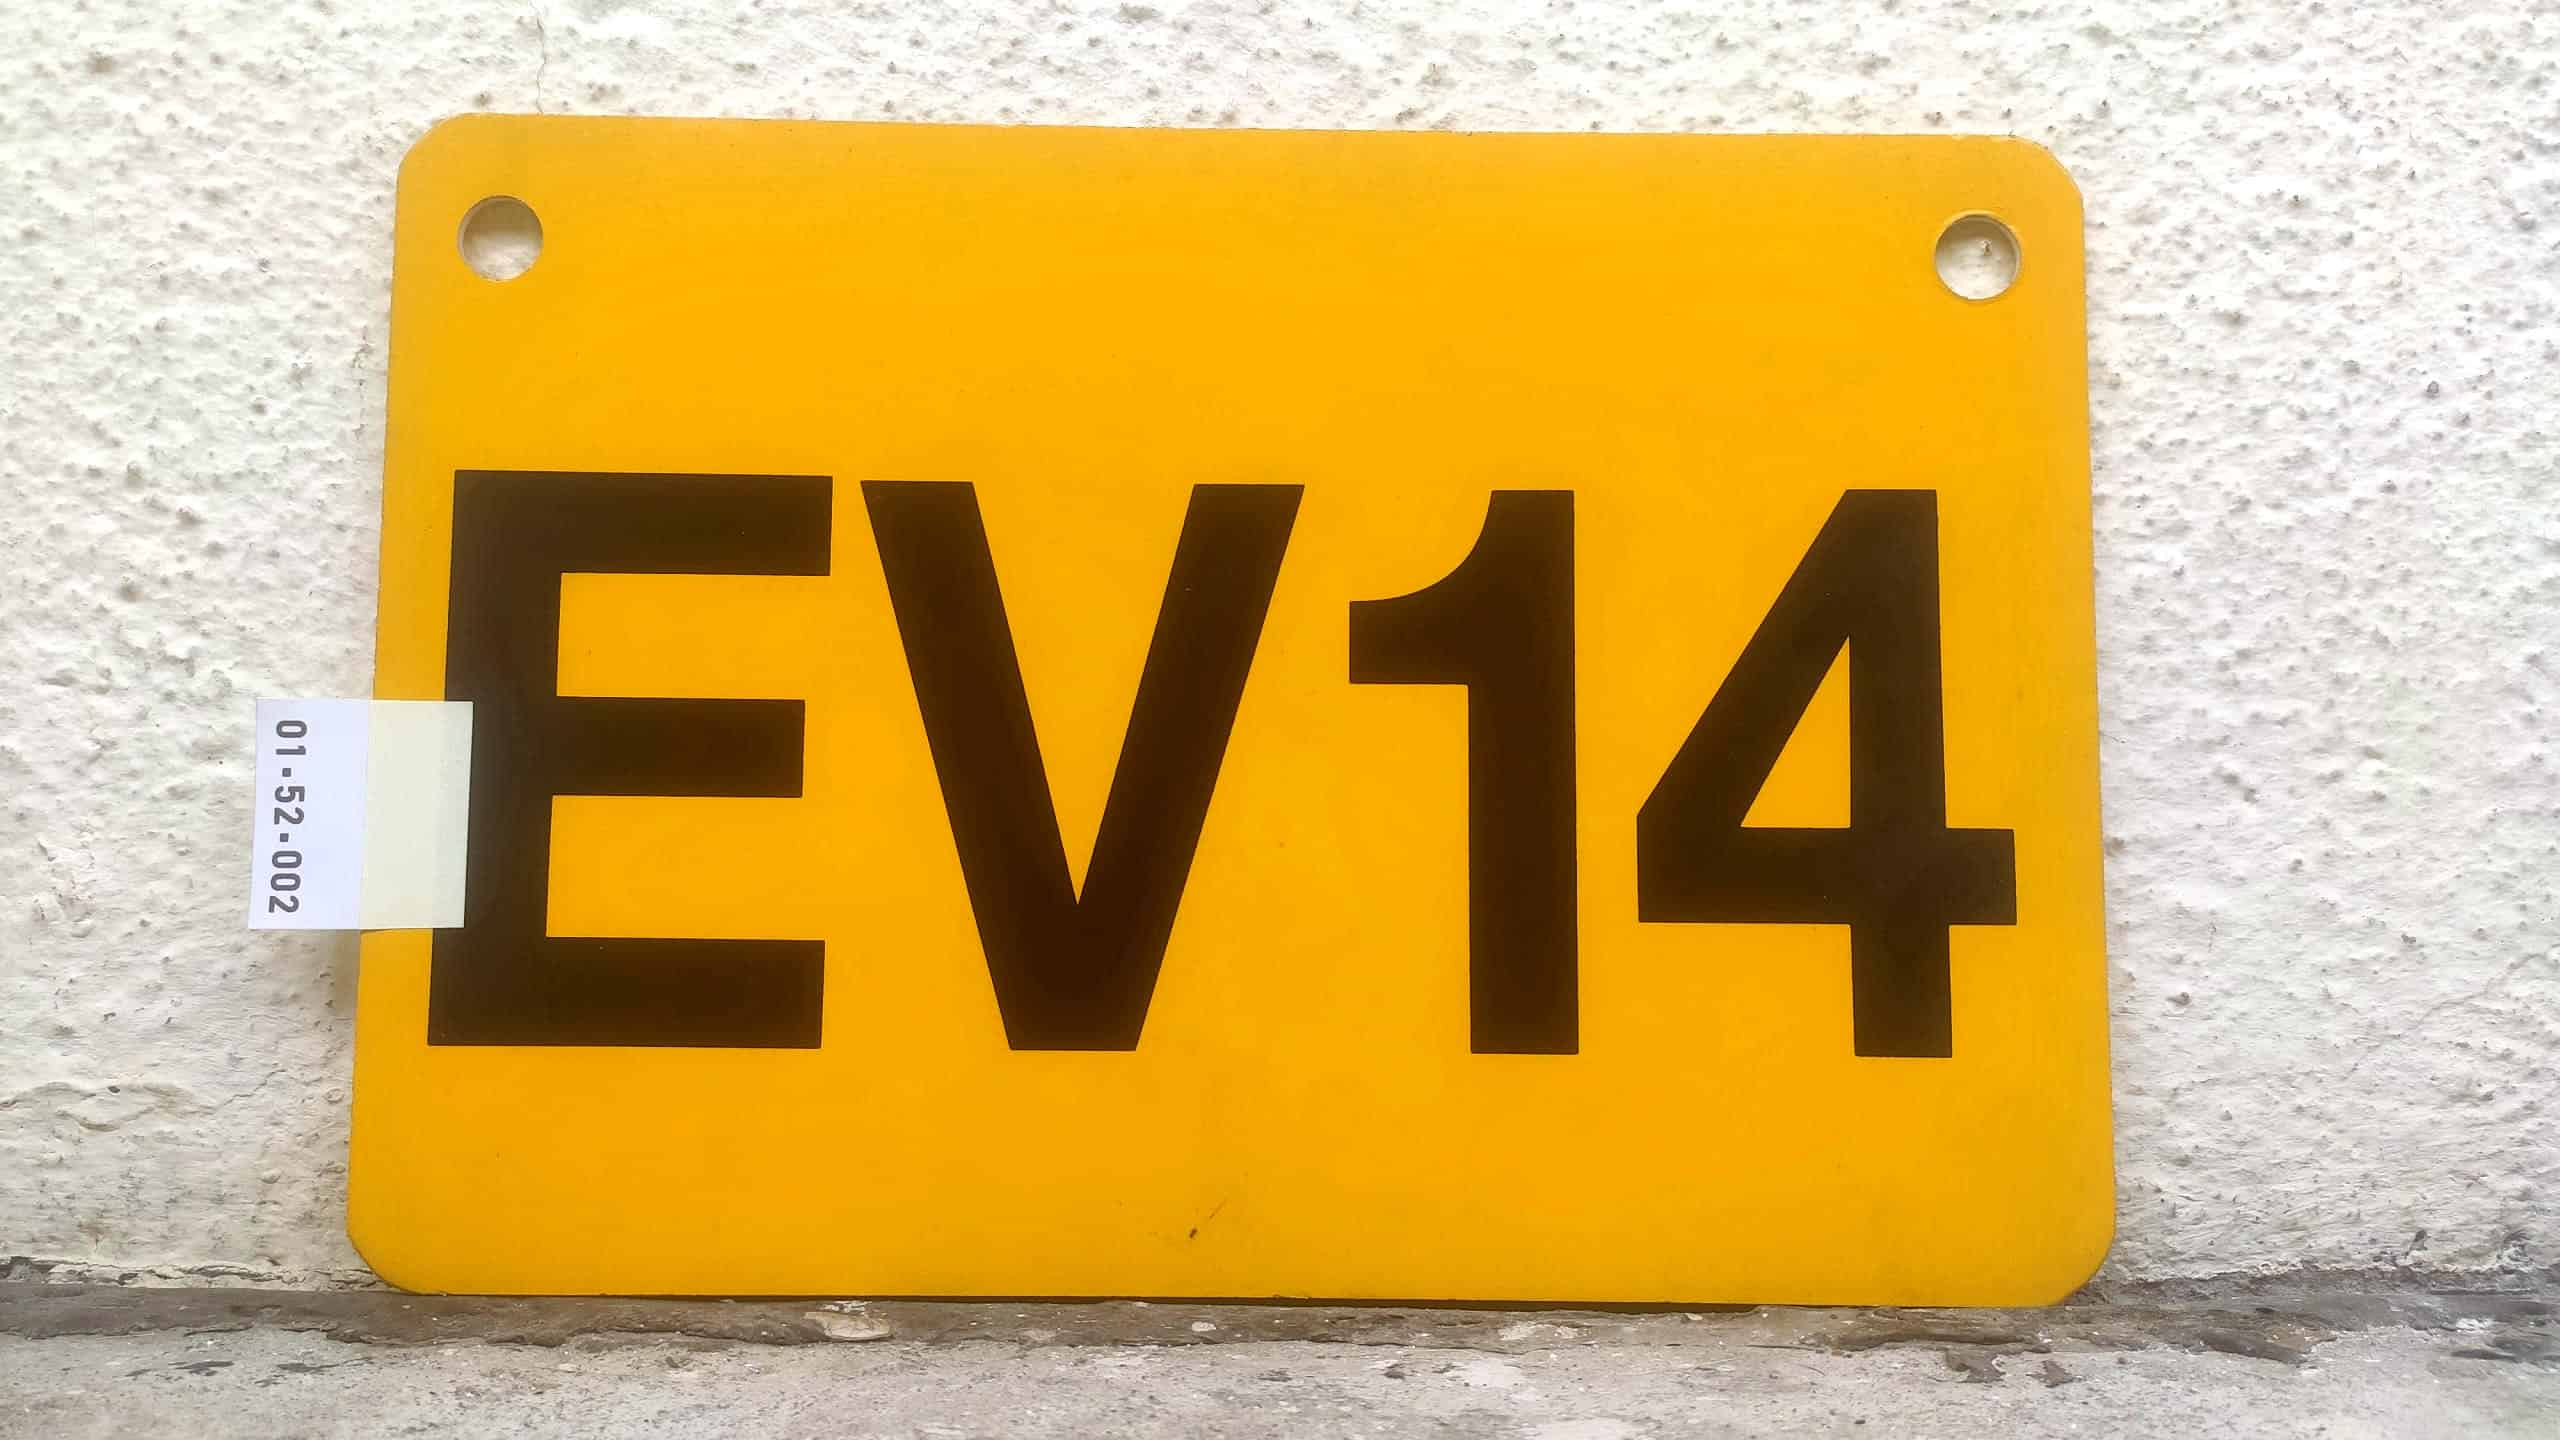 EV14